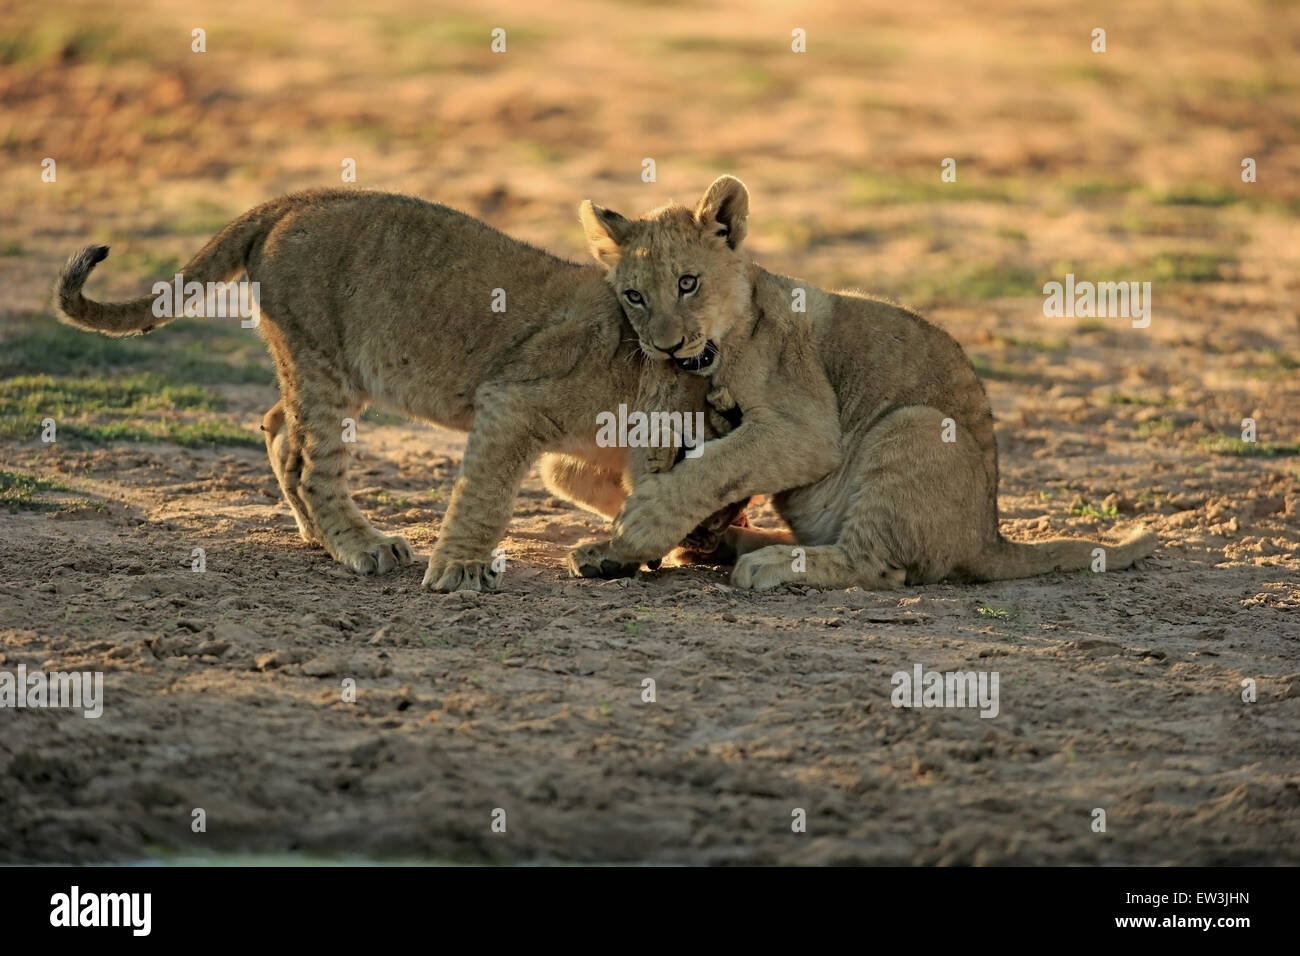 Transvaal Lion (Panthera leo krugeri) two cubs, four-months old, playfighting at waterhole in semi-desert, Tswalu Kalahari Reserve, Kalahari Desert, Northern Cape, South Africa, November Stock Photo